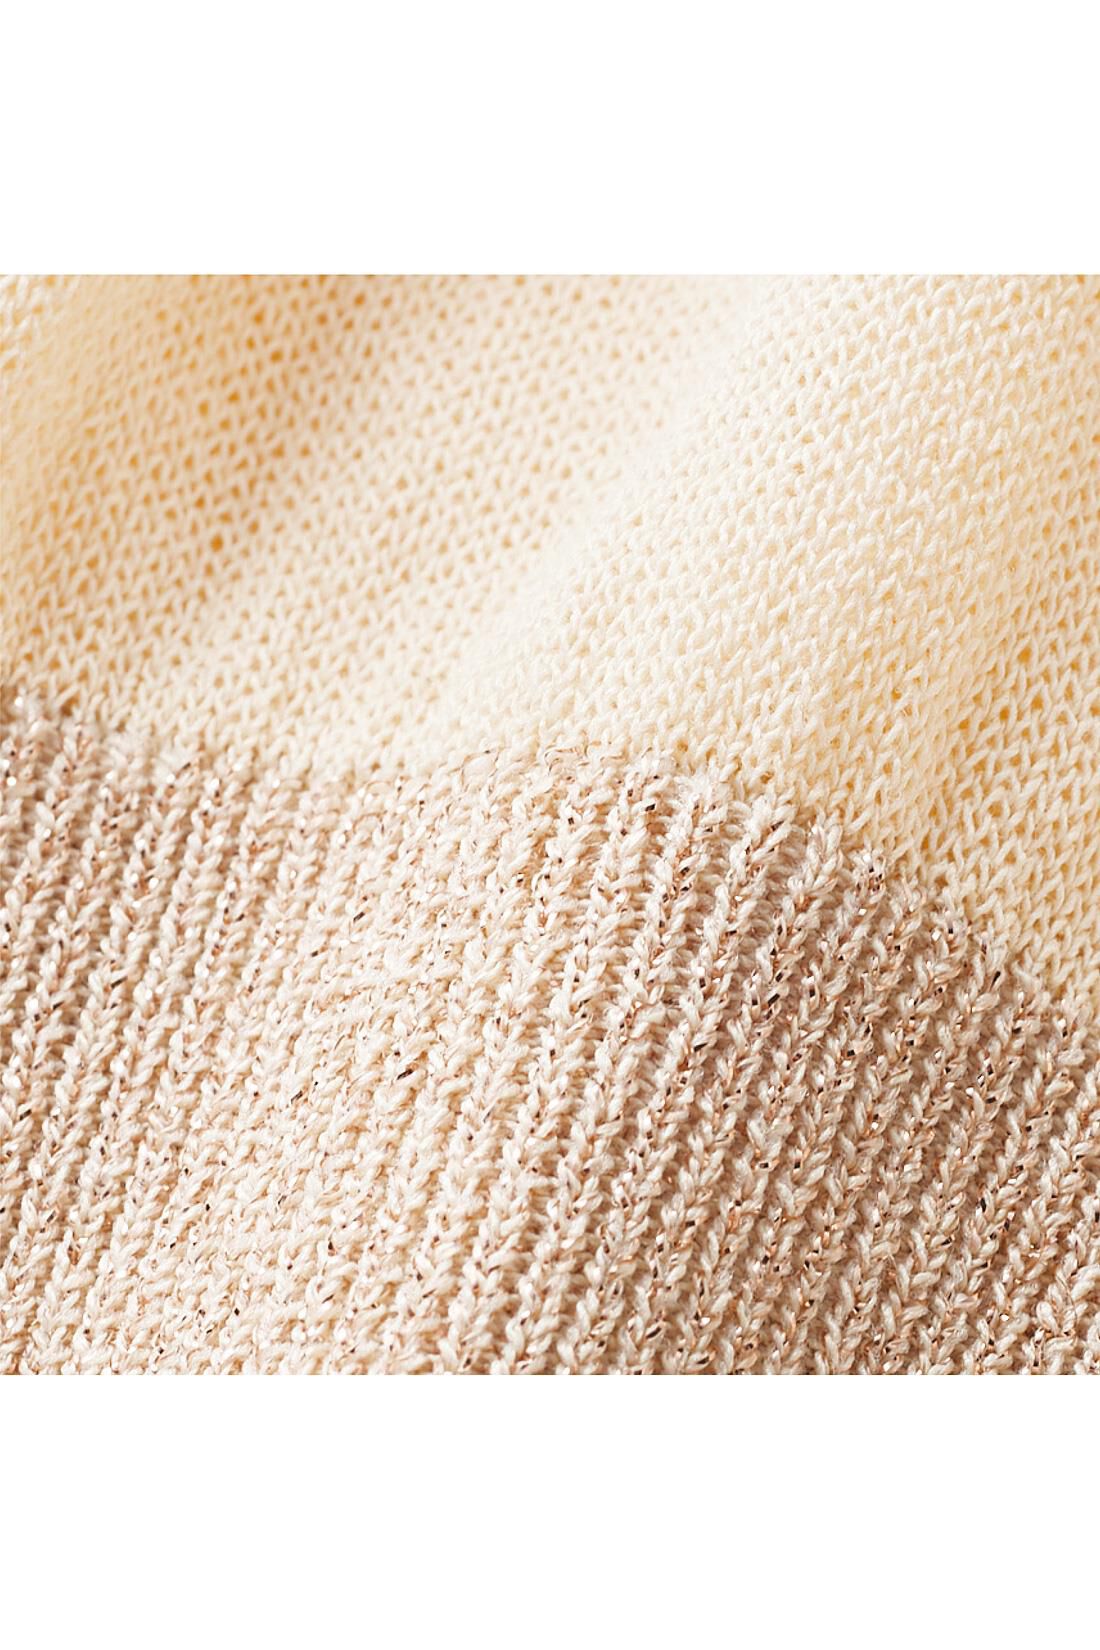 Real Stock|リブ イン コンフォート　サラリと素肌に気持ちいい　ふんわり袖のニットカーディガン〈ピンクベージュ〉|ほんのり透ける薄手のニット素材。サラッとドライな肌心地が涼やか。すそリブはラメ糸をミックス。